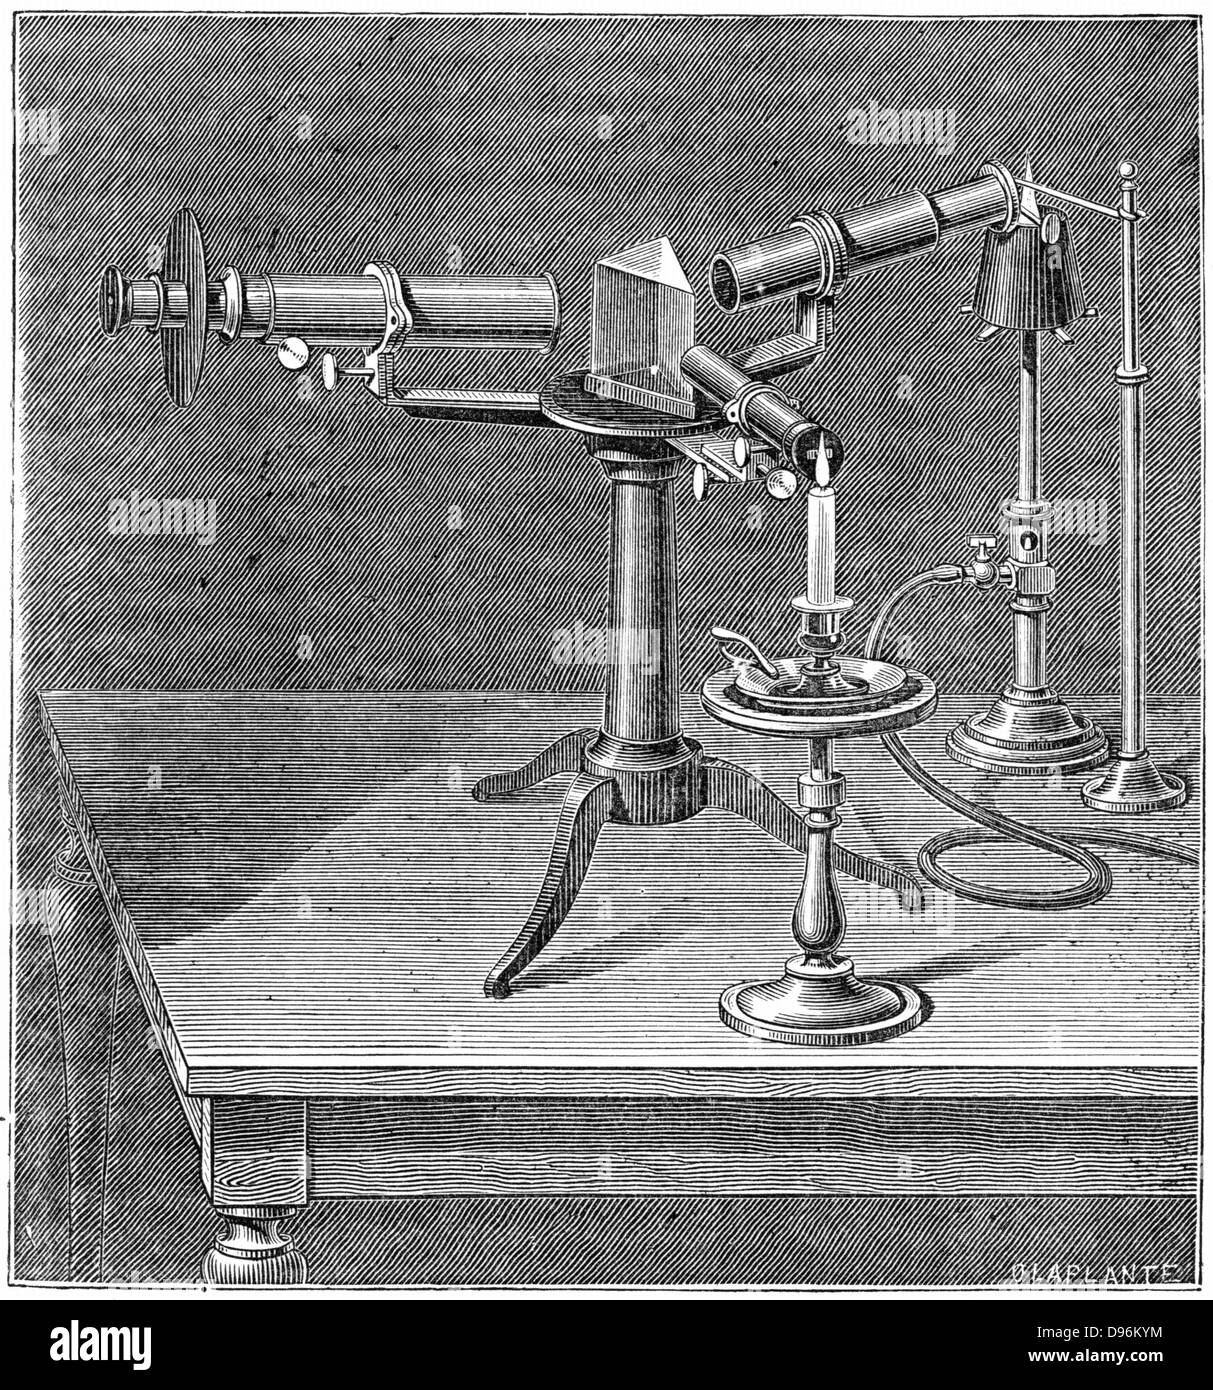 Spektroskop der verwendete Typ von Robert Wilhelm Bunsen (1811-1899) und Gustav Robert Kirchhoff (1824-1887). Entdeckt Spektrum Analyse (1859), die Entdeckung von Elementen wie Cäsium und Rubidium aktiviert. Gravur c 1895. Stockfoto